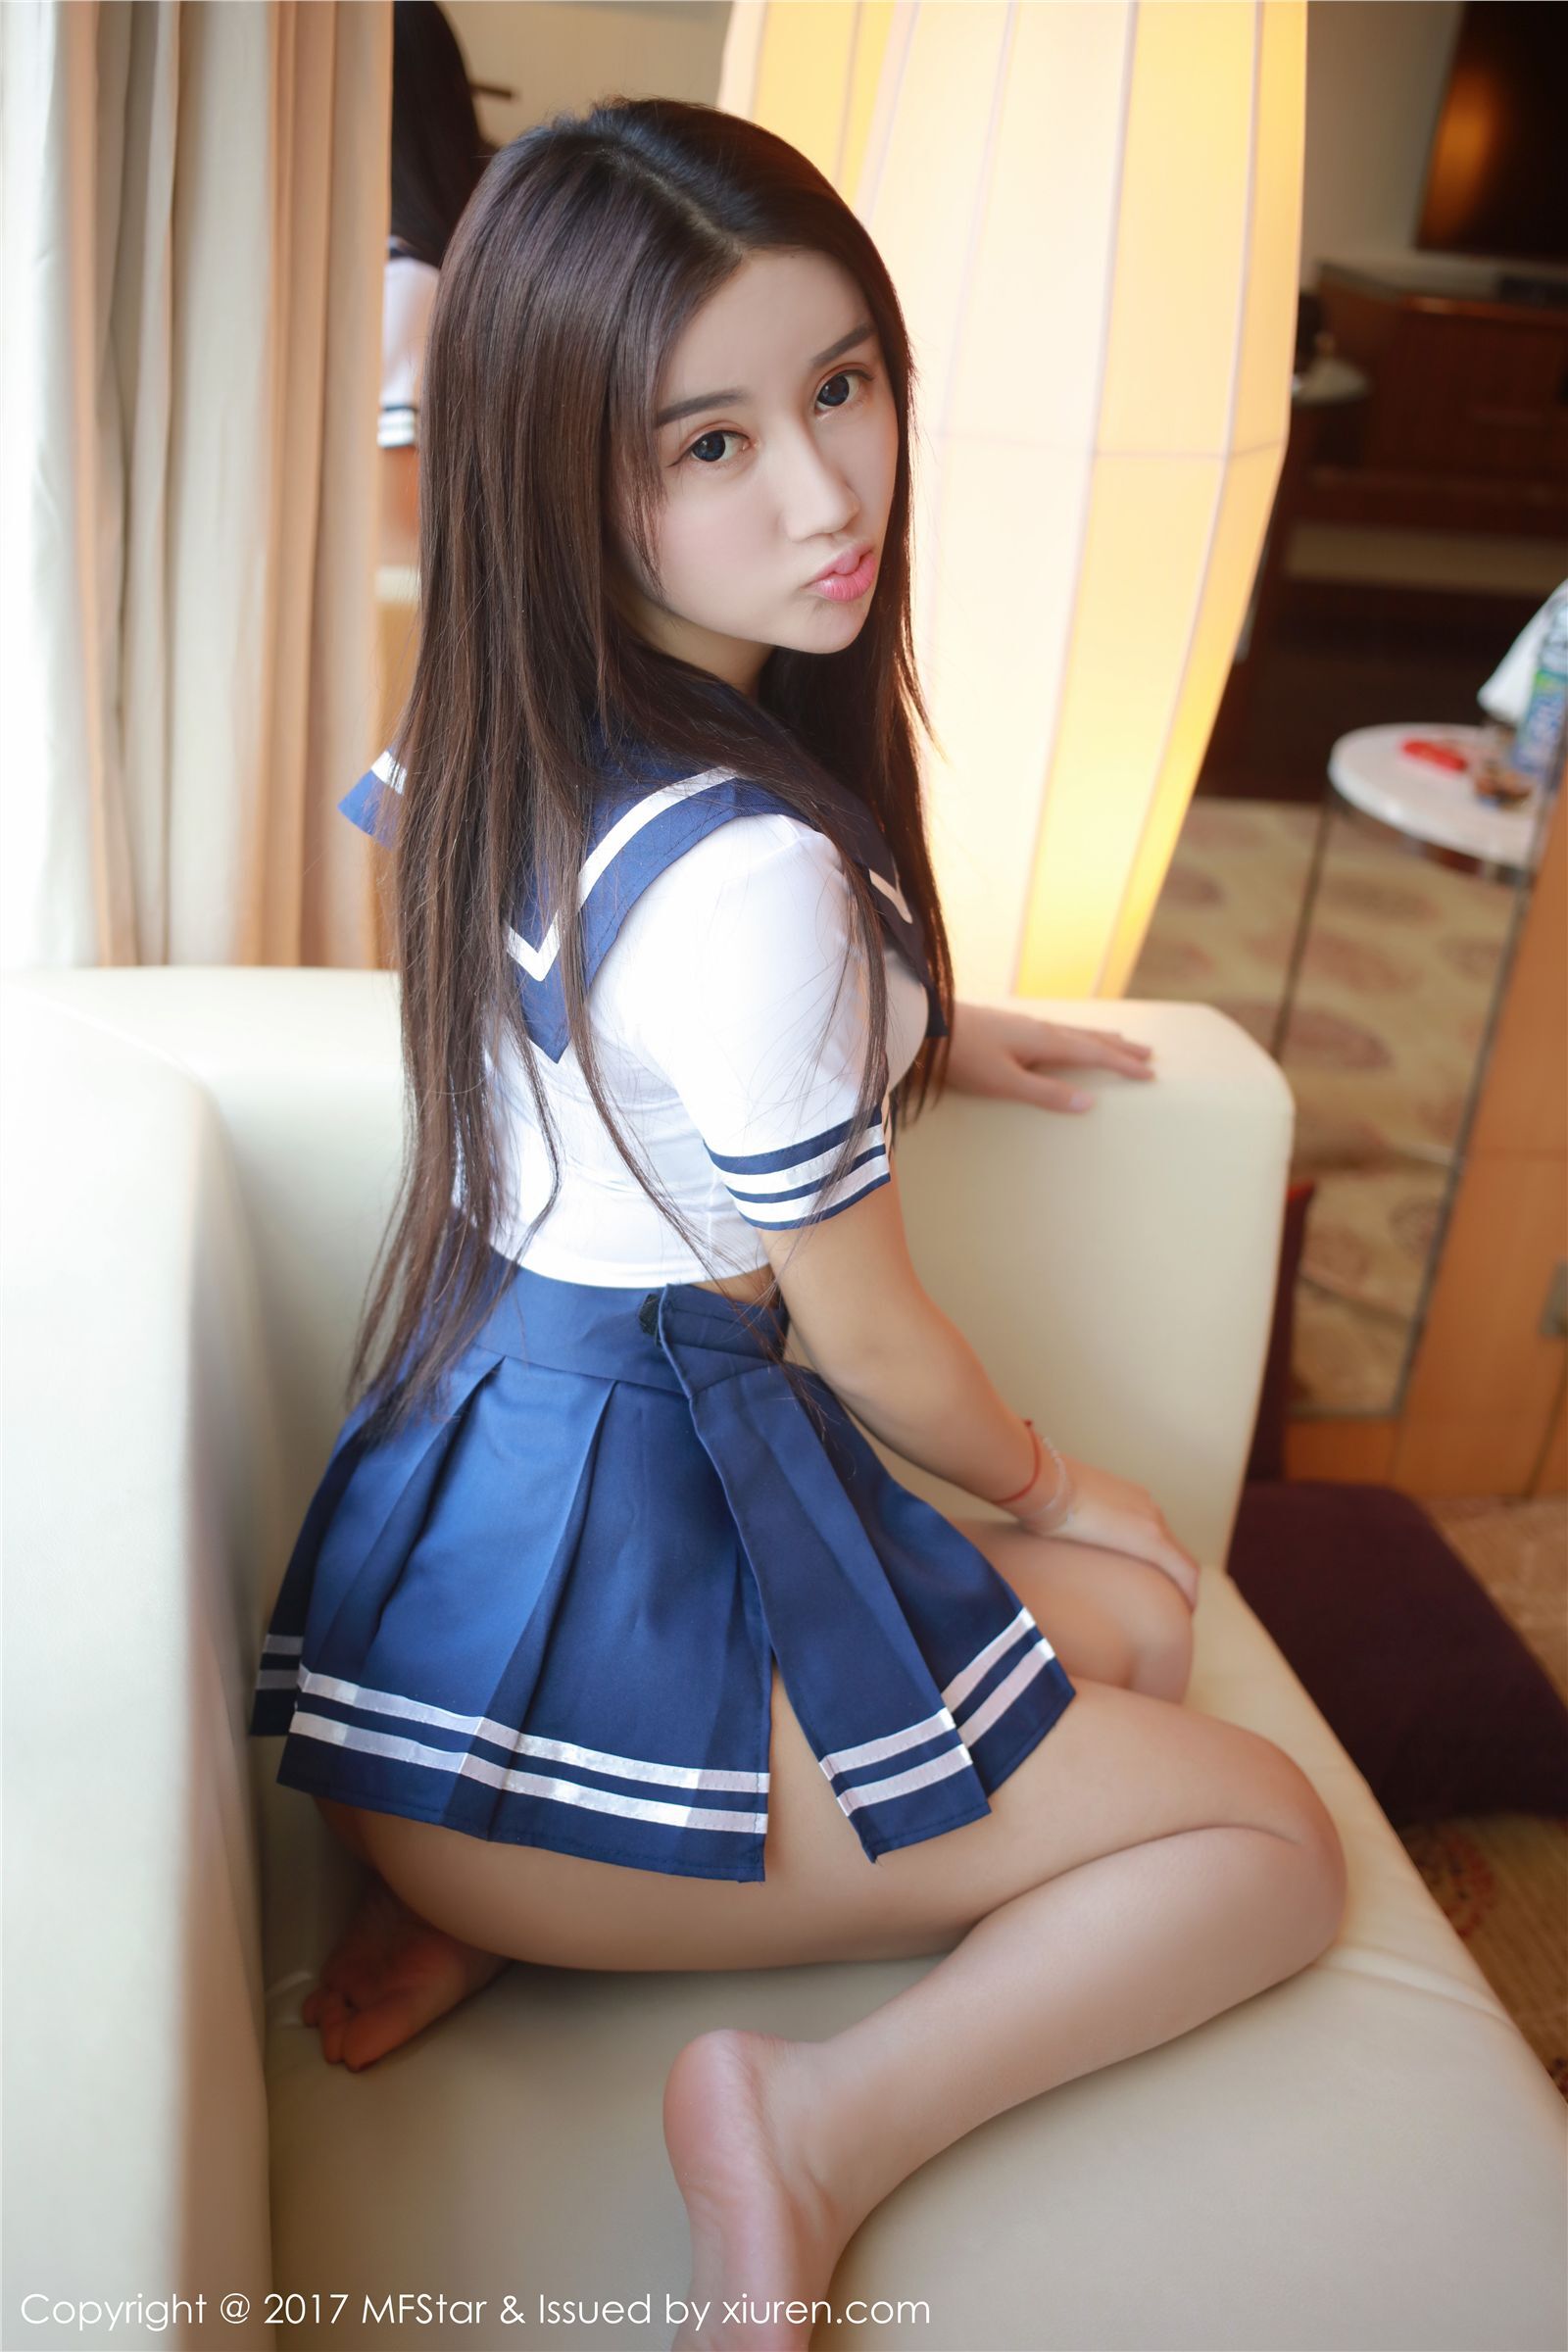 [ligui cabinet] March 5, 2017 online beauty model Wenxin